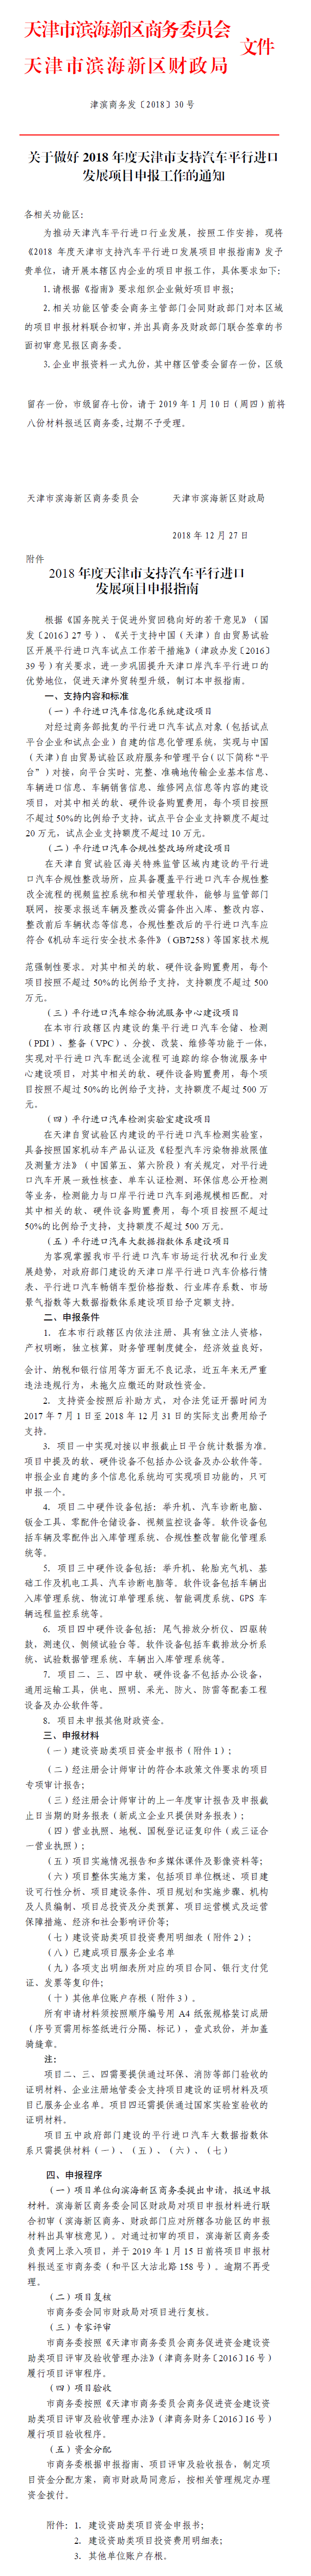 关于做好2018年度天津市支持汽车平行进口发展项目申报工作的通知.png